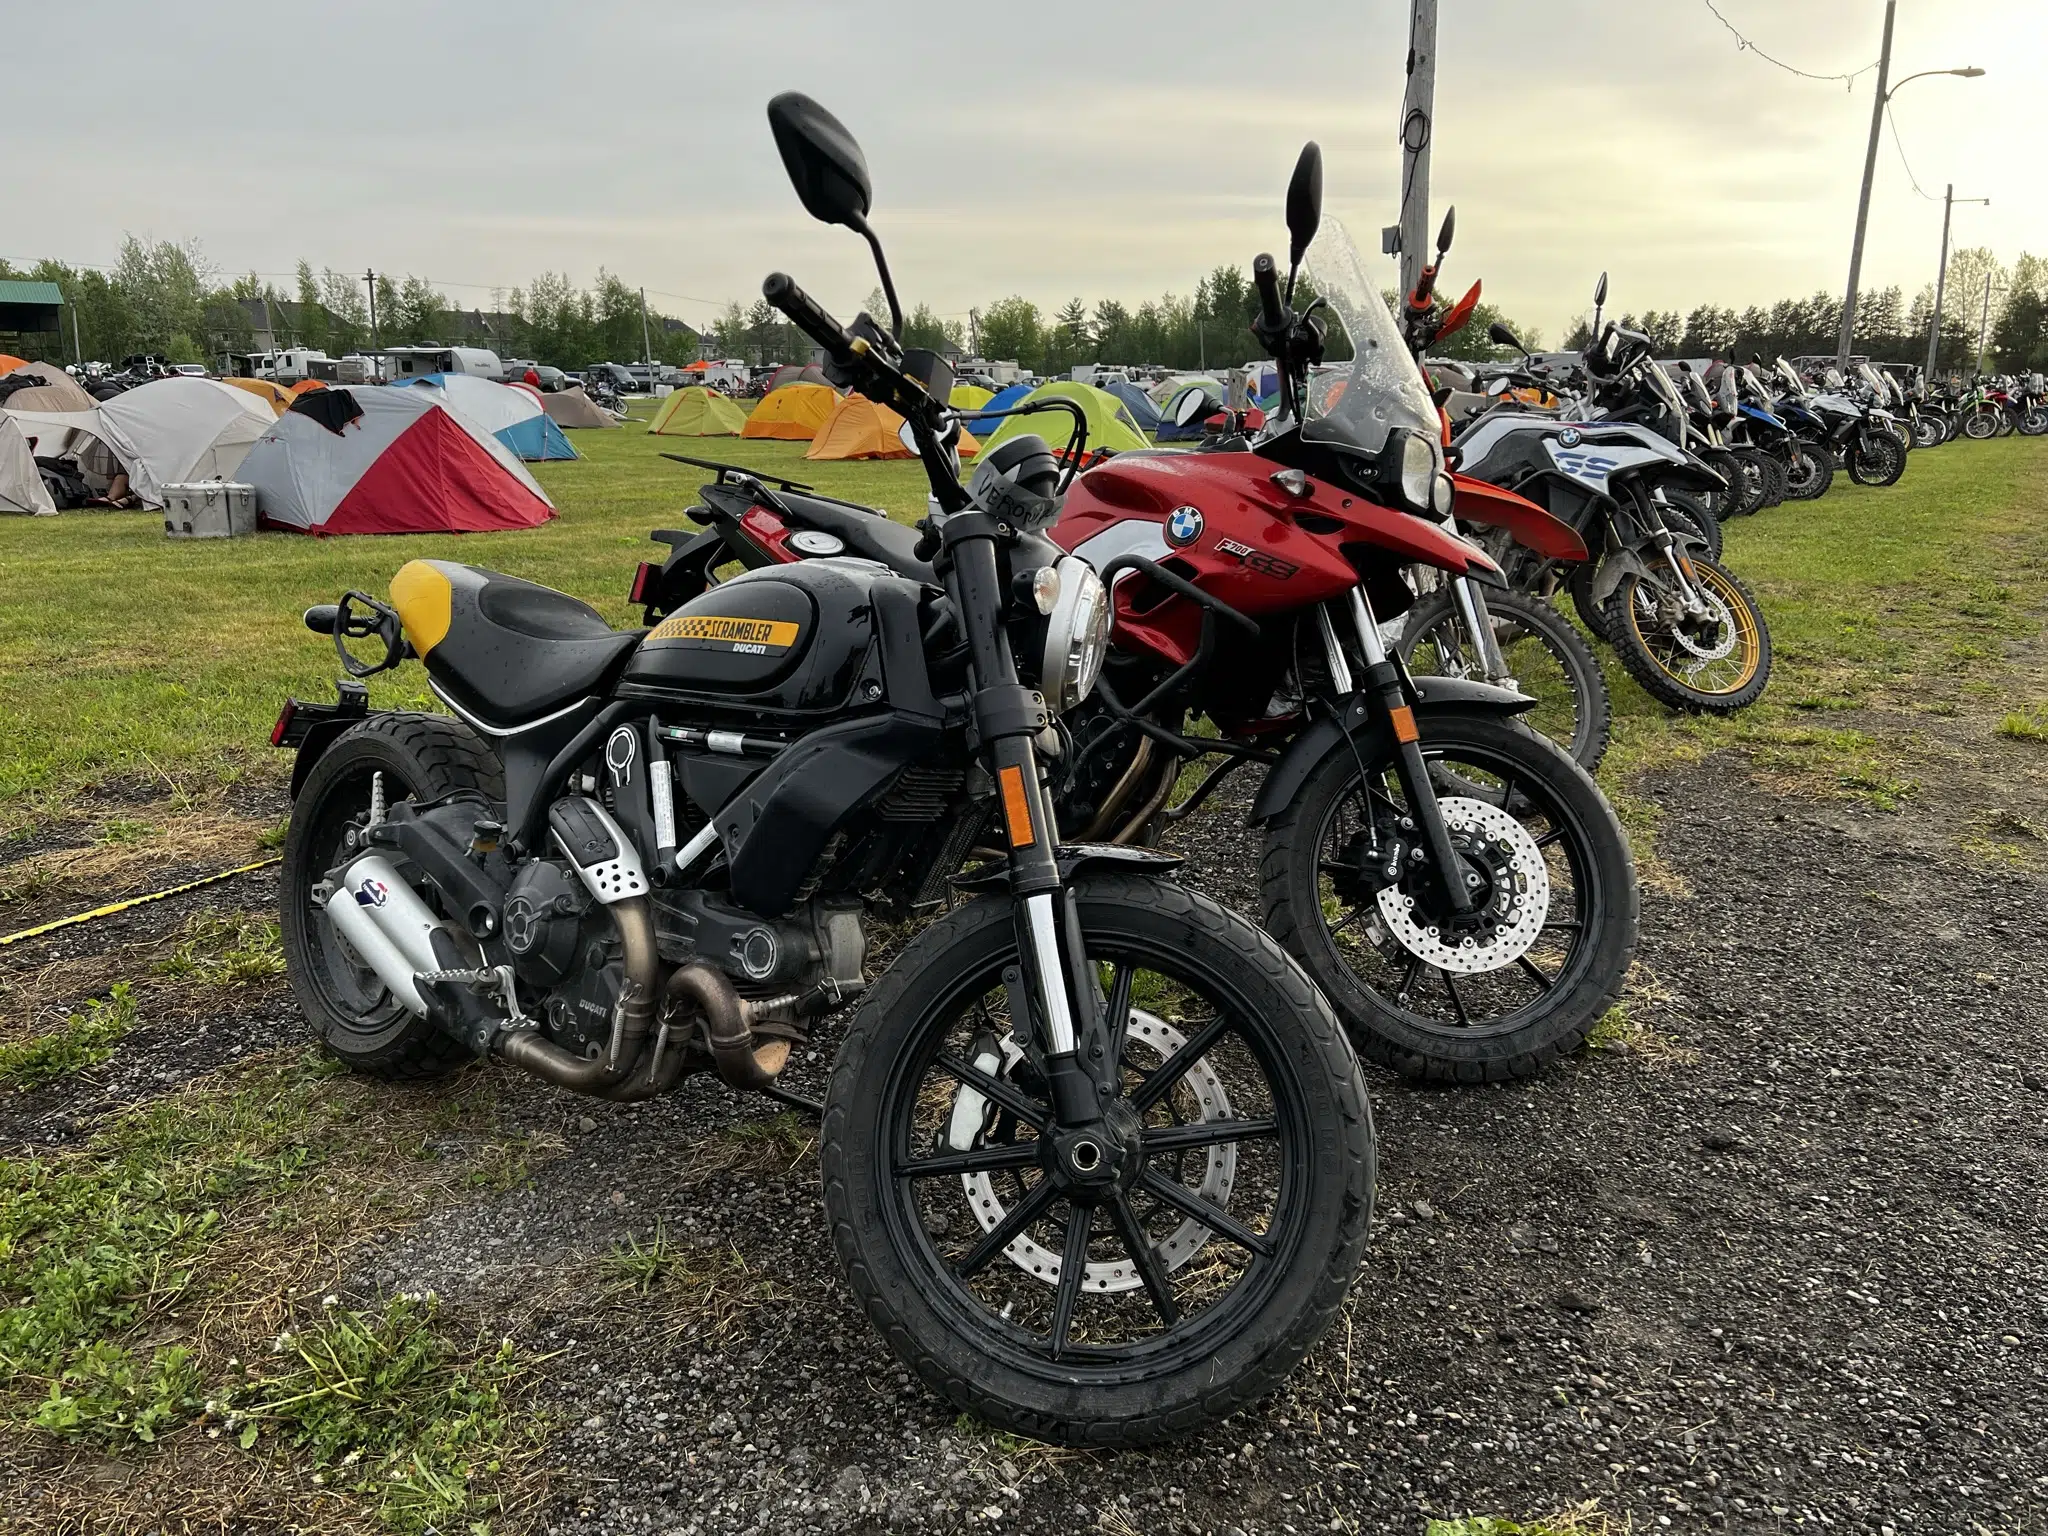 Les motos de toutes sortes et les tentes sont au rendez-vous.